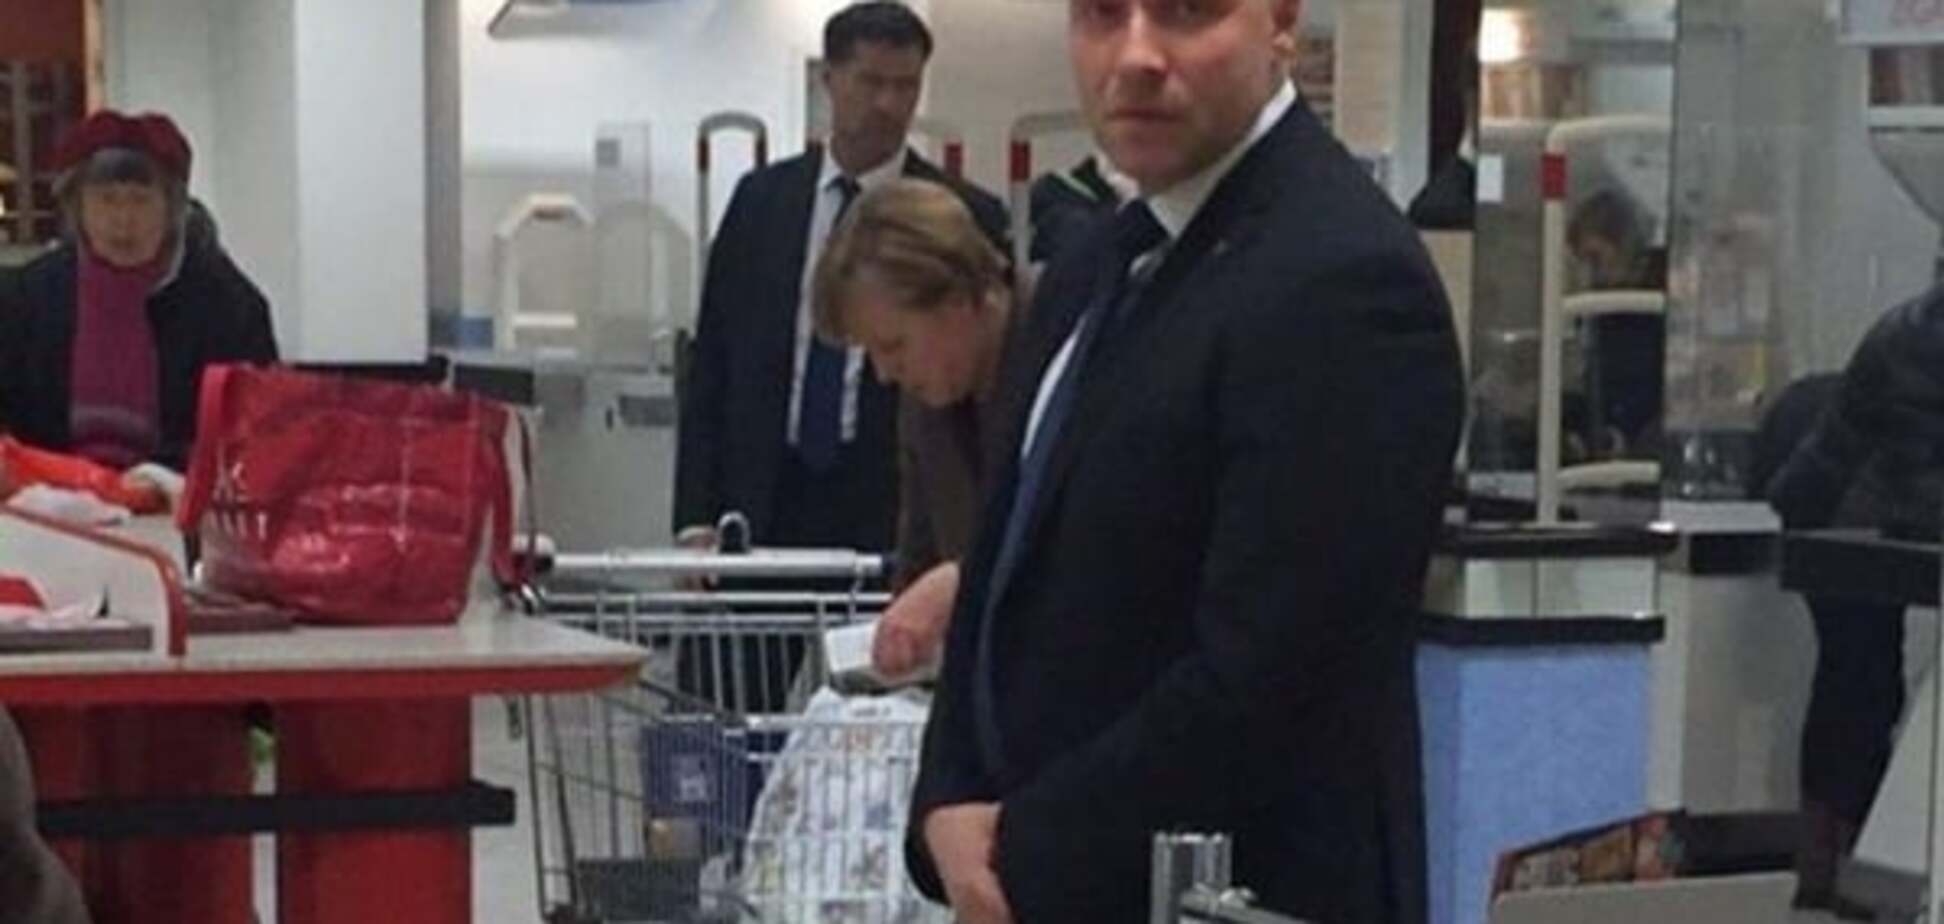 Фрау с 'баулами': Меркель застукали в супермаркете. Фотофакт